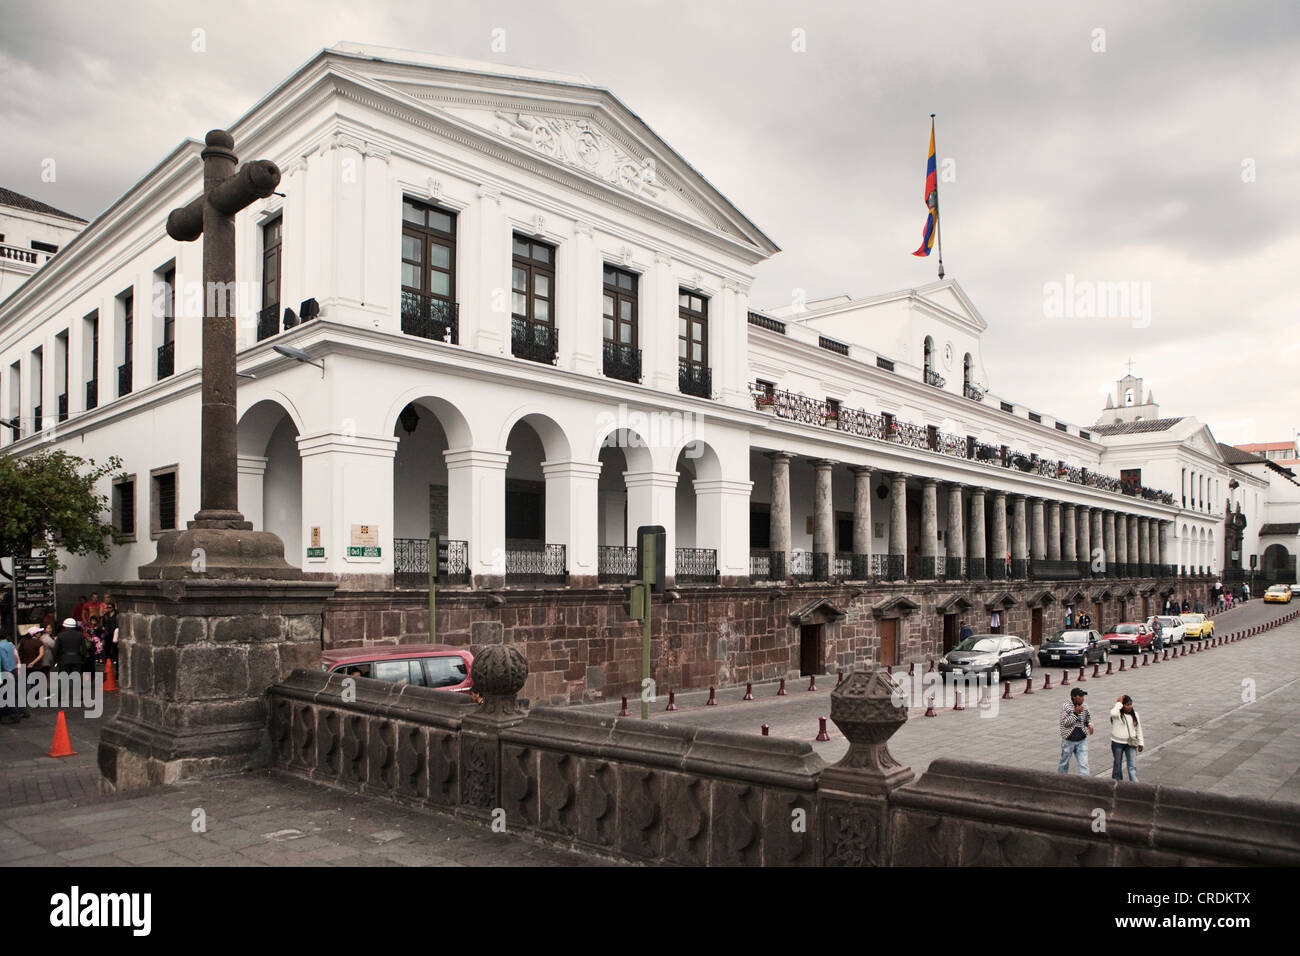 Palacio de Carondelet, the seat of the Ecuadorian government, in the Plaza Grande in the historic town centre of Quito, Ecuador Stock Photo